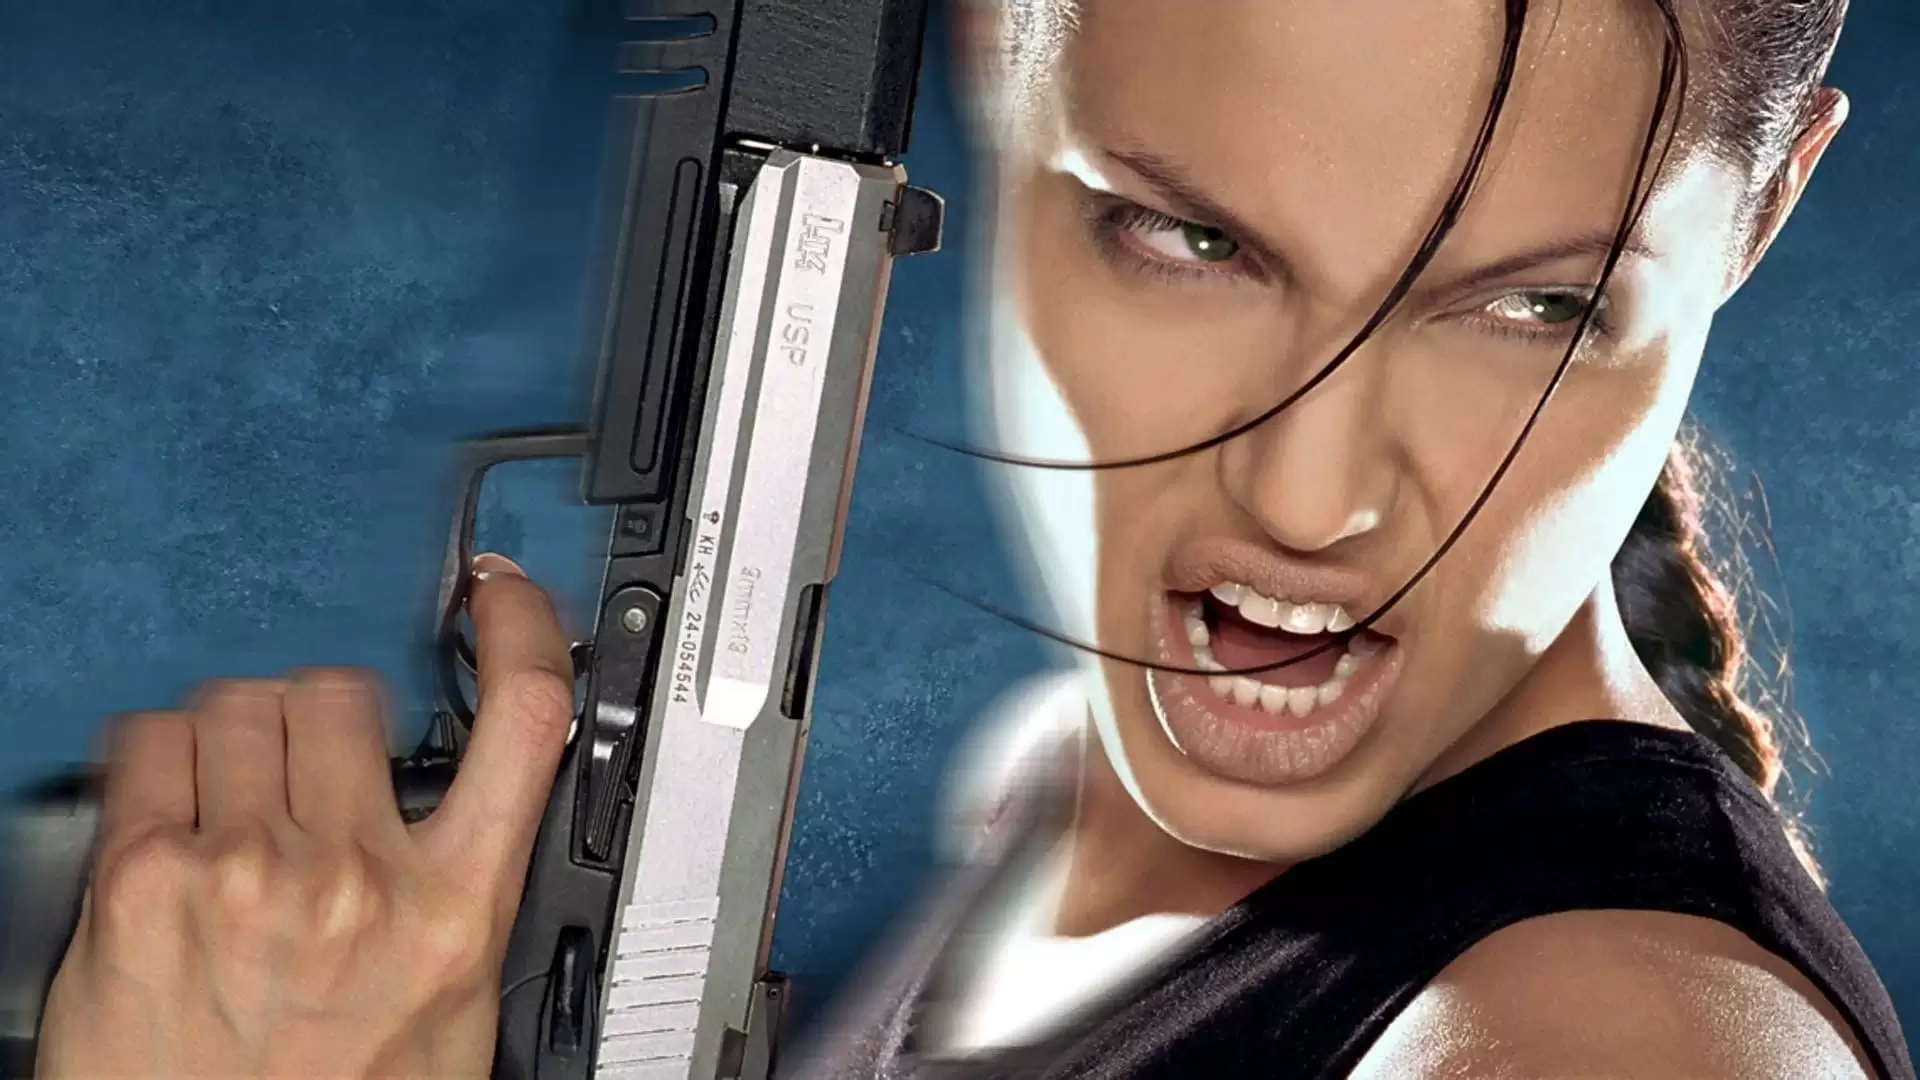 دانلود فیلم Lara Croft: Tomb Raider 2001 (لارا کرافت: مهاجم مقبره) با زیرنویس فارسی و تماشای آنلاین